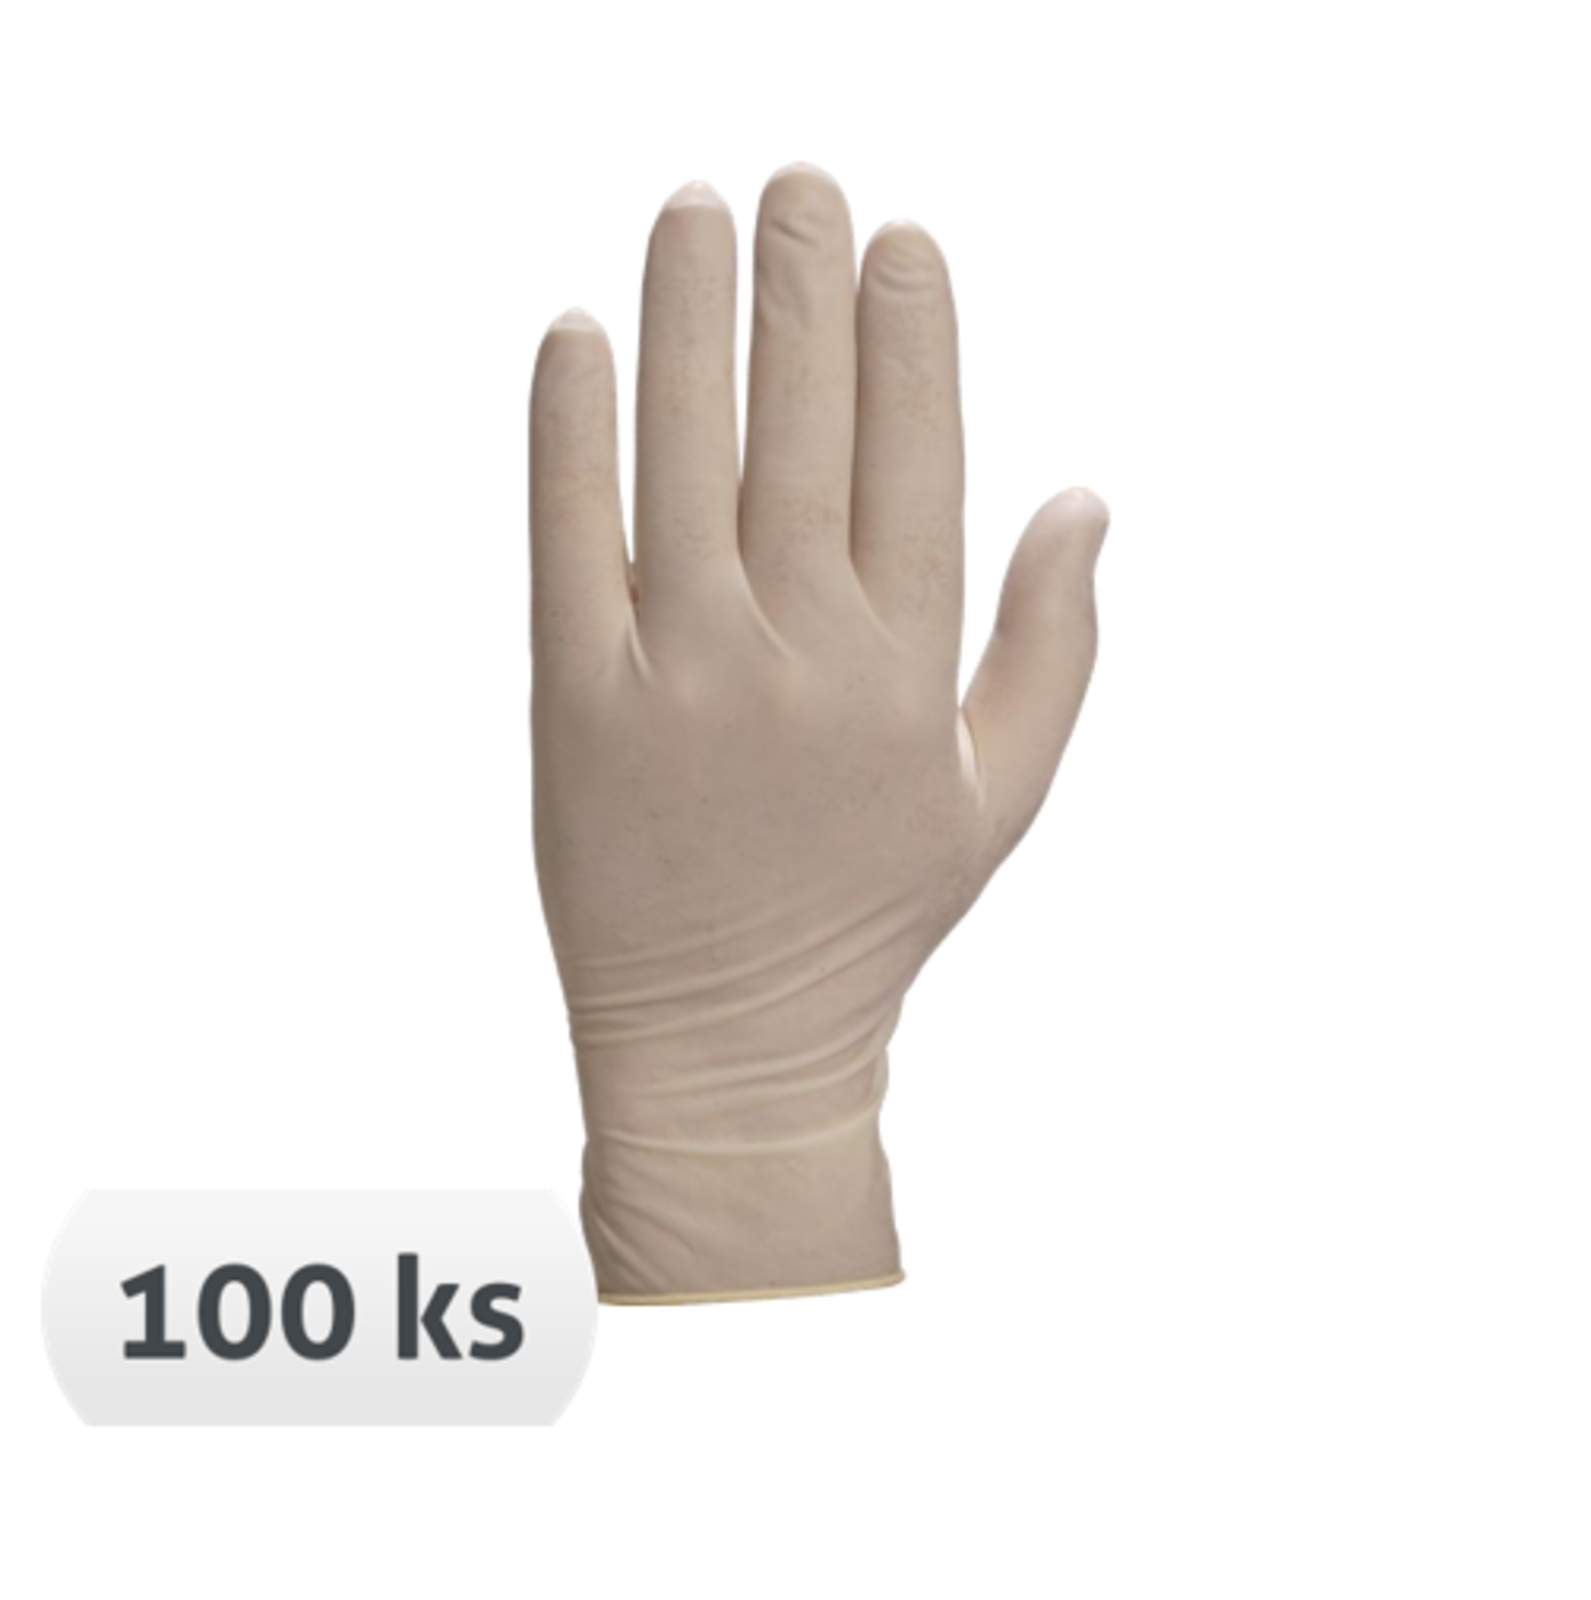 Jednorazové latexové rukavice Venitactyl V1310 púdrované 100 ks - veľkosť: 6/7